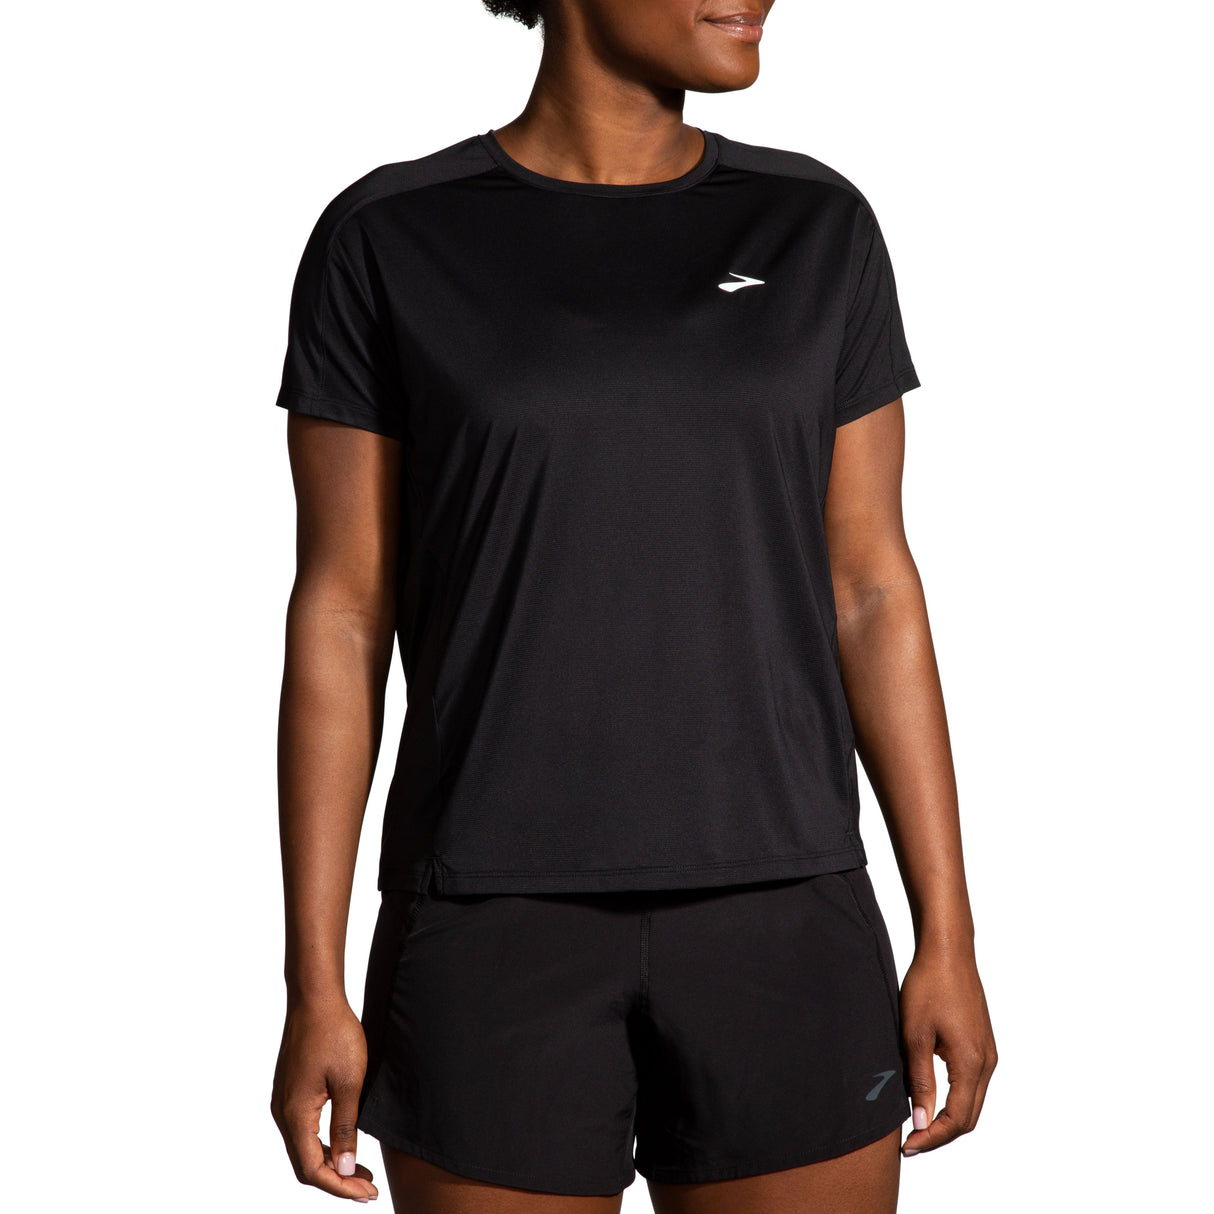 Brooks Women's Sprint Free Short Sleeve 2.0 running shirt